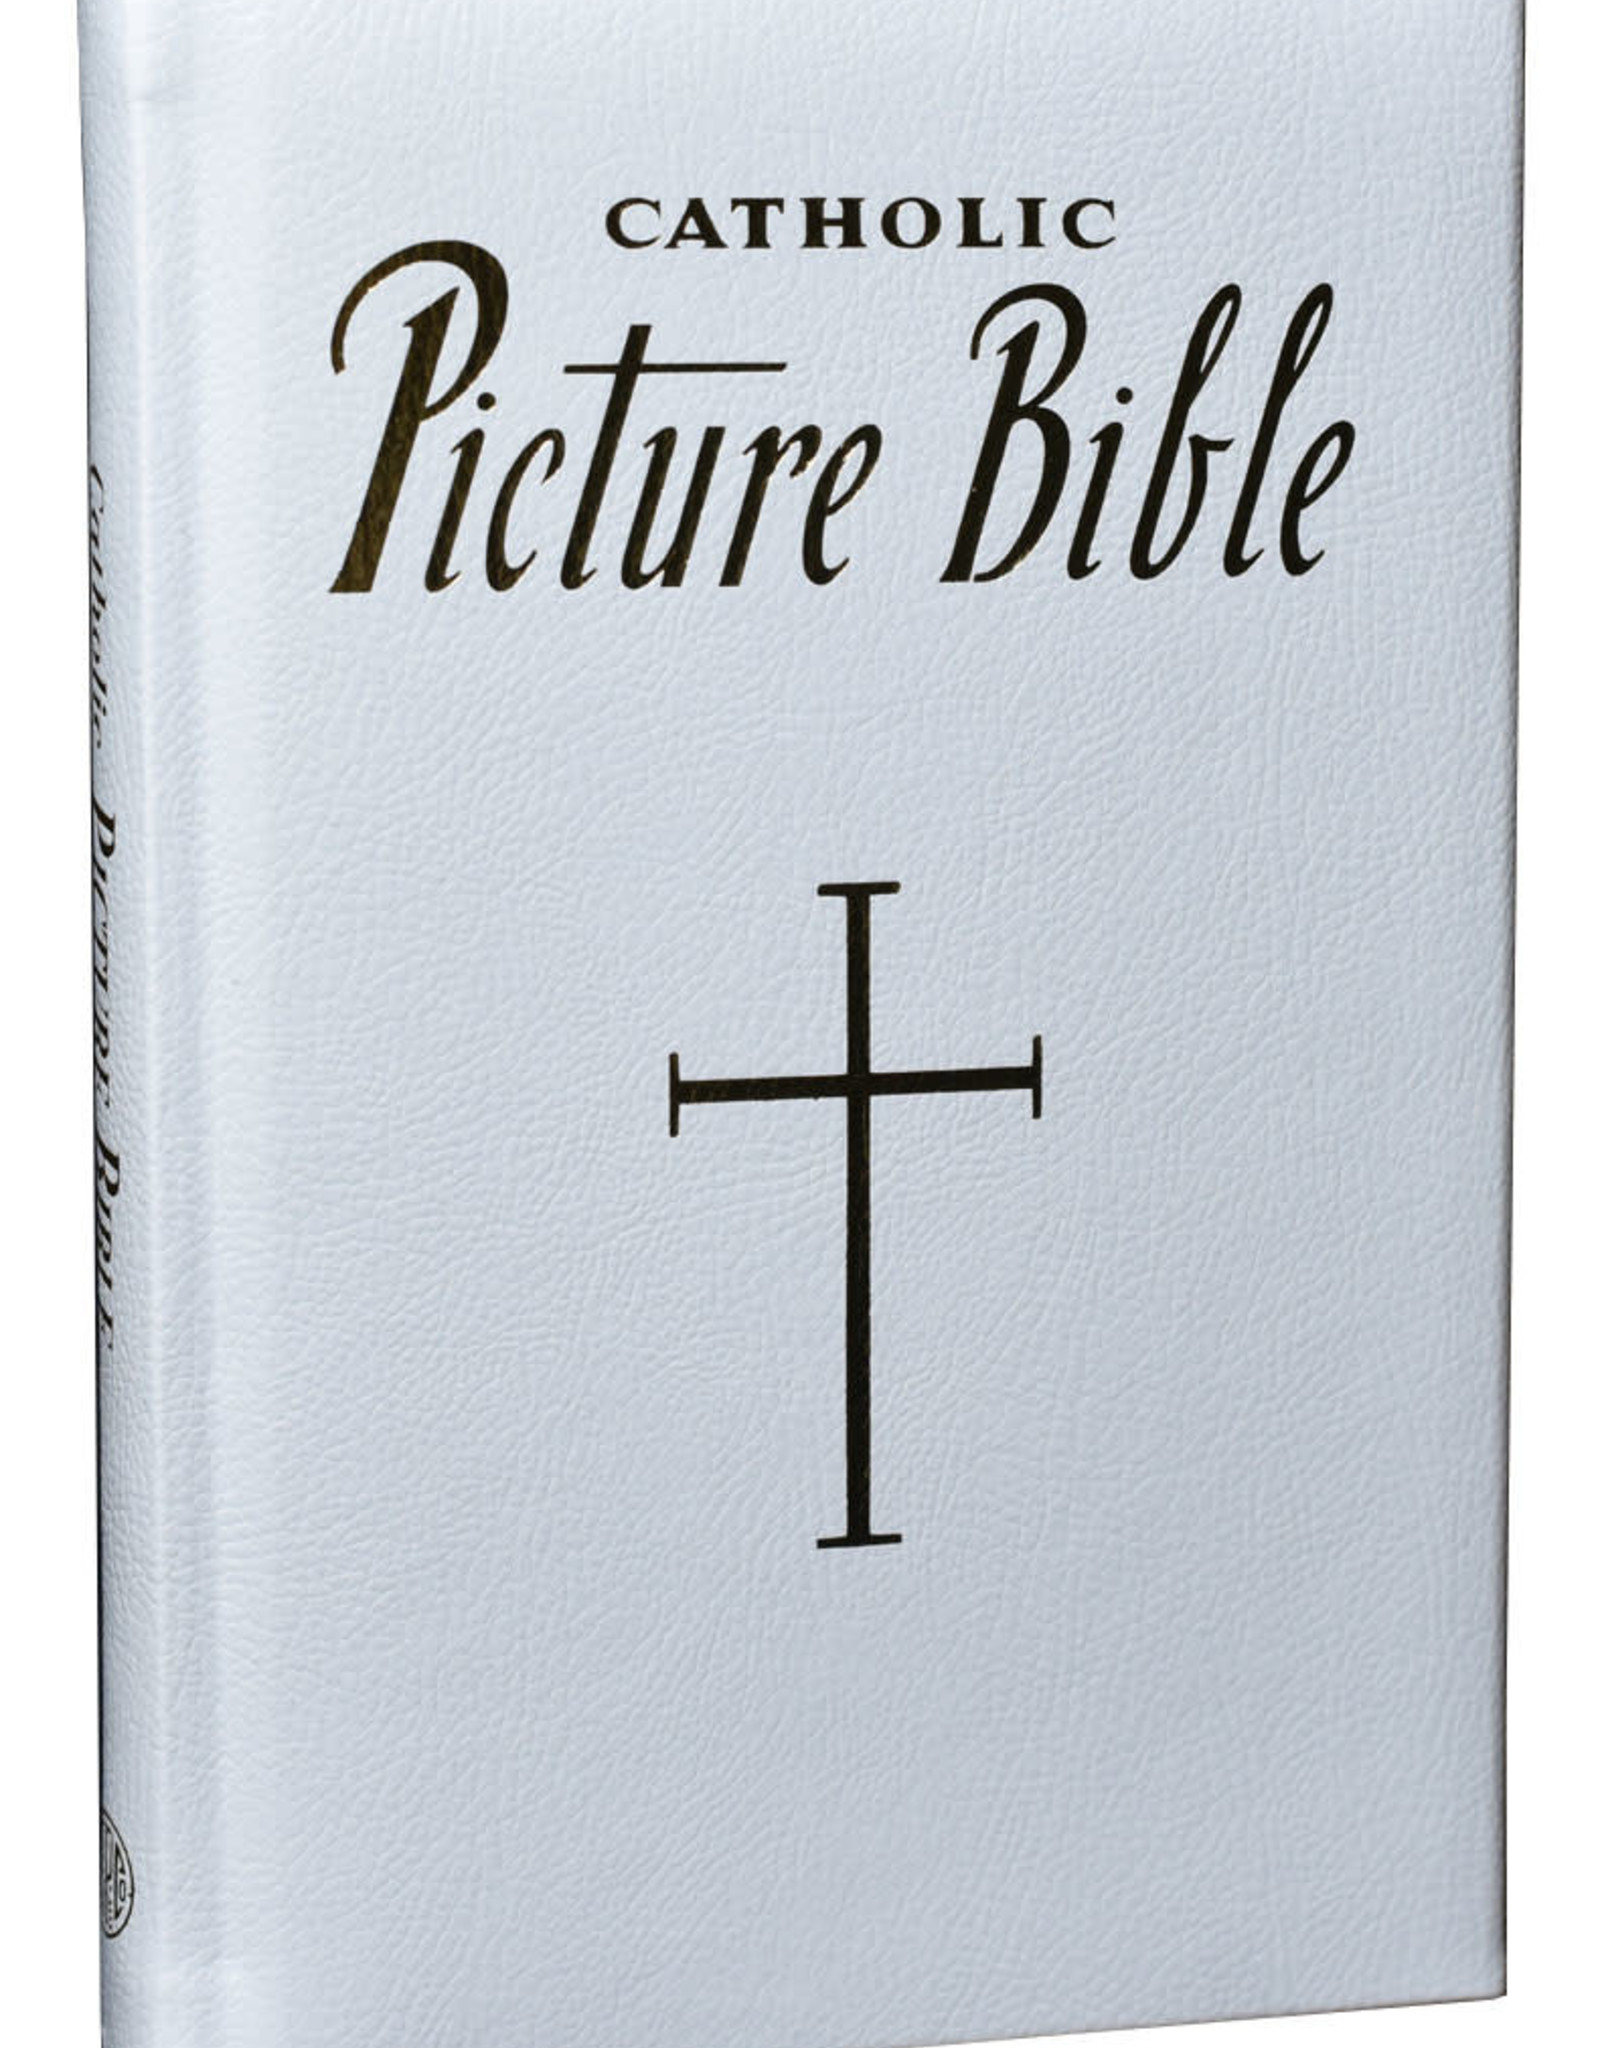 Catholic Book Publishing New Catholic Picture Bible, by Lawrence Lovasik (paddded)(white)